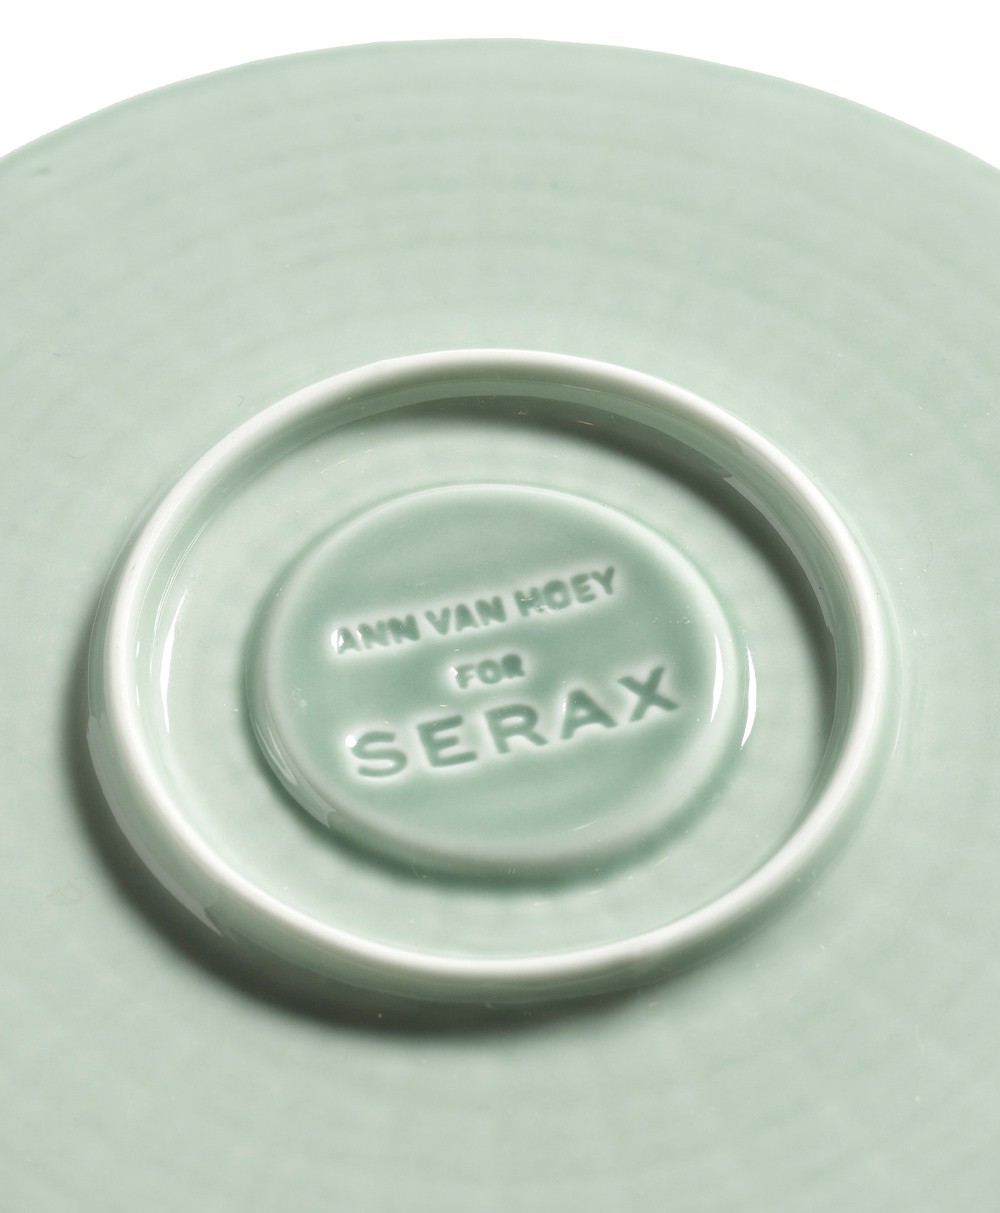 Geprägte Unterseite der Kollektion NIDO von SERAX in Kooperation mit Ann Van Hoey im RAUM concept store.